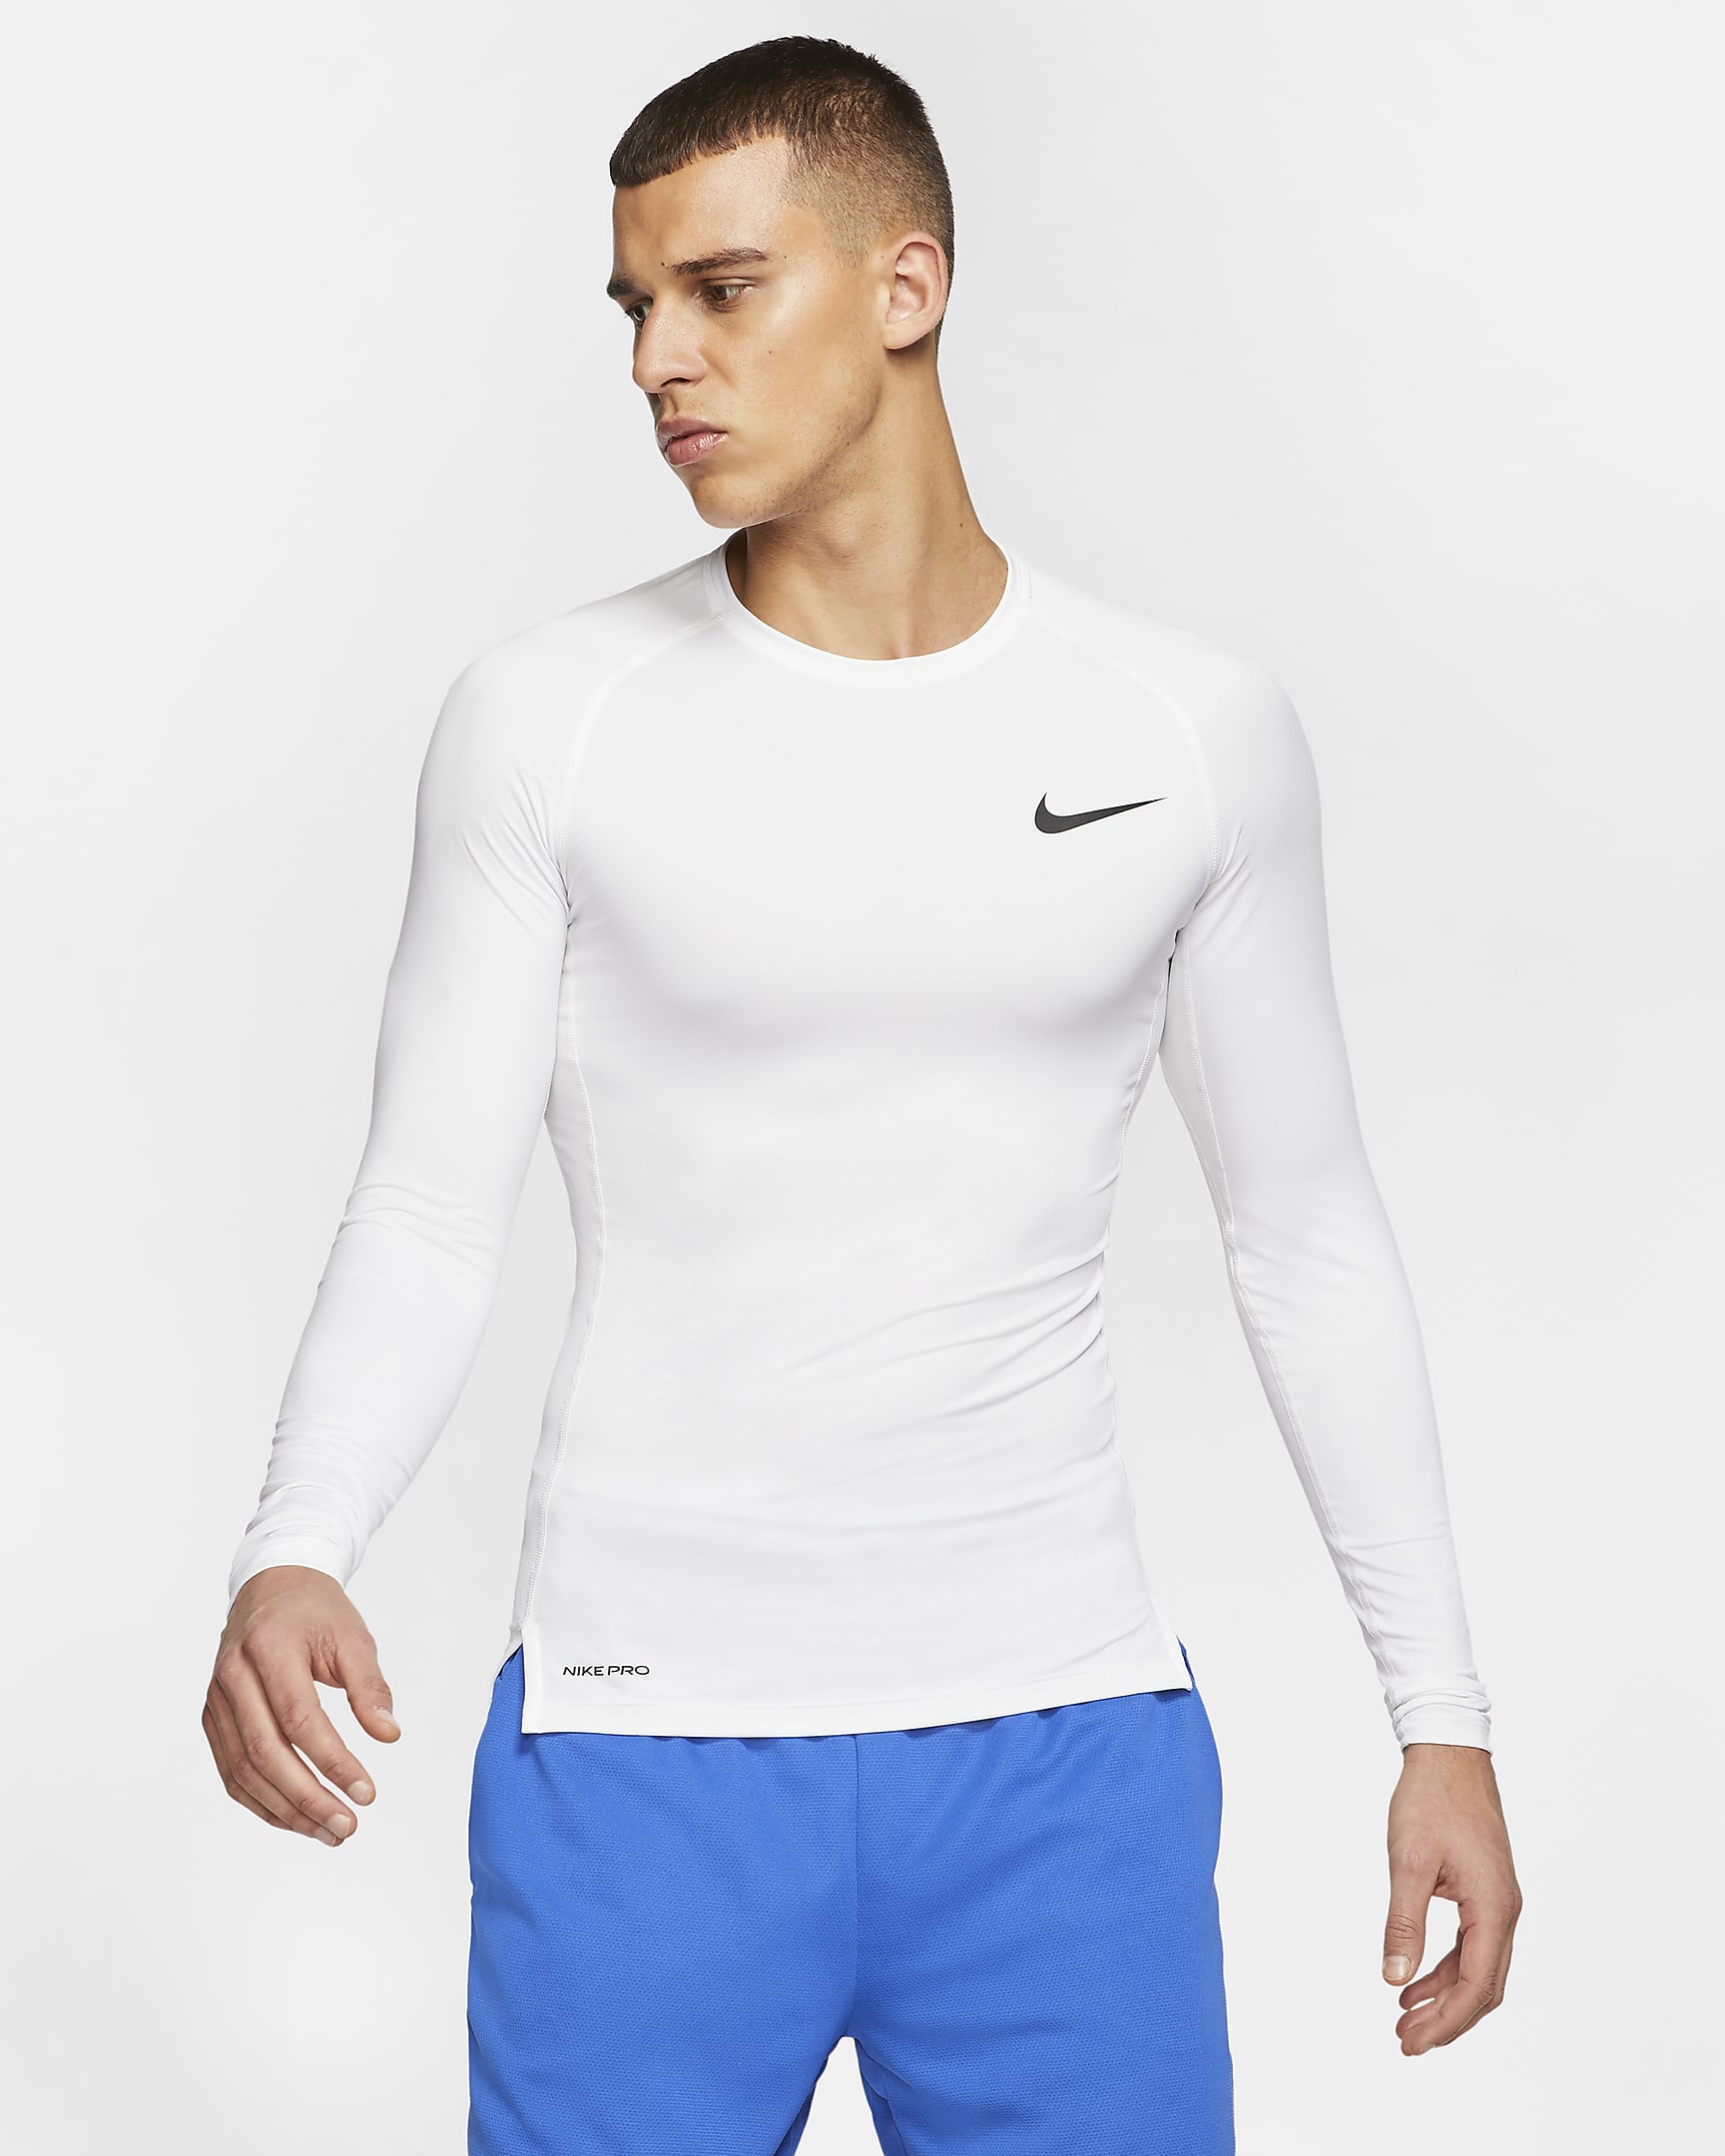 Nike Pro Men's Tight Fit Long-Sleeve Top. Nike.com